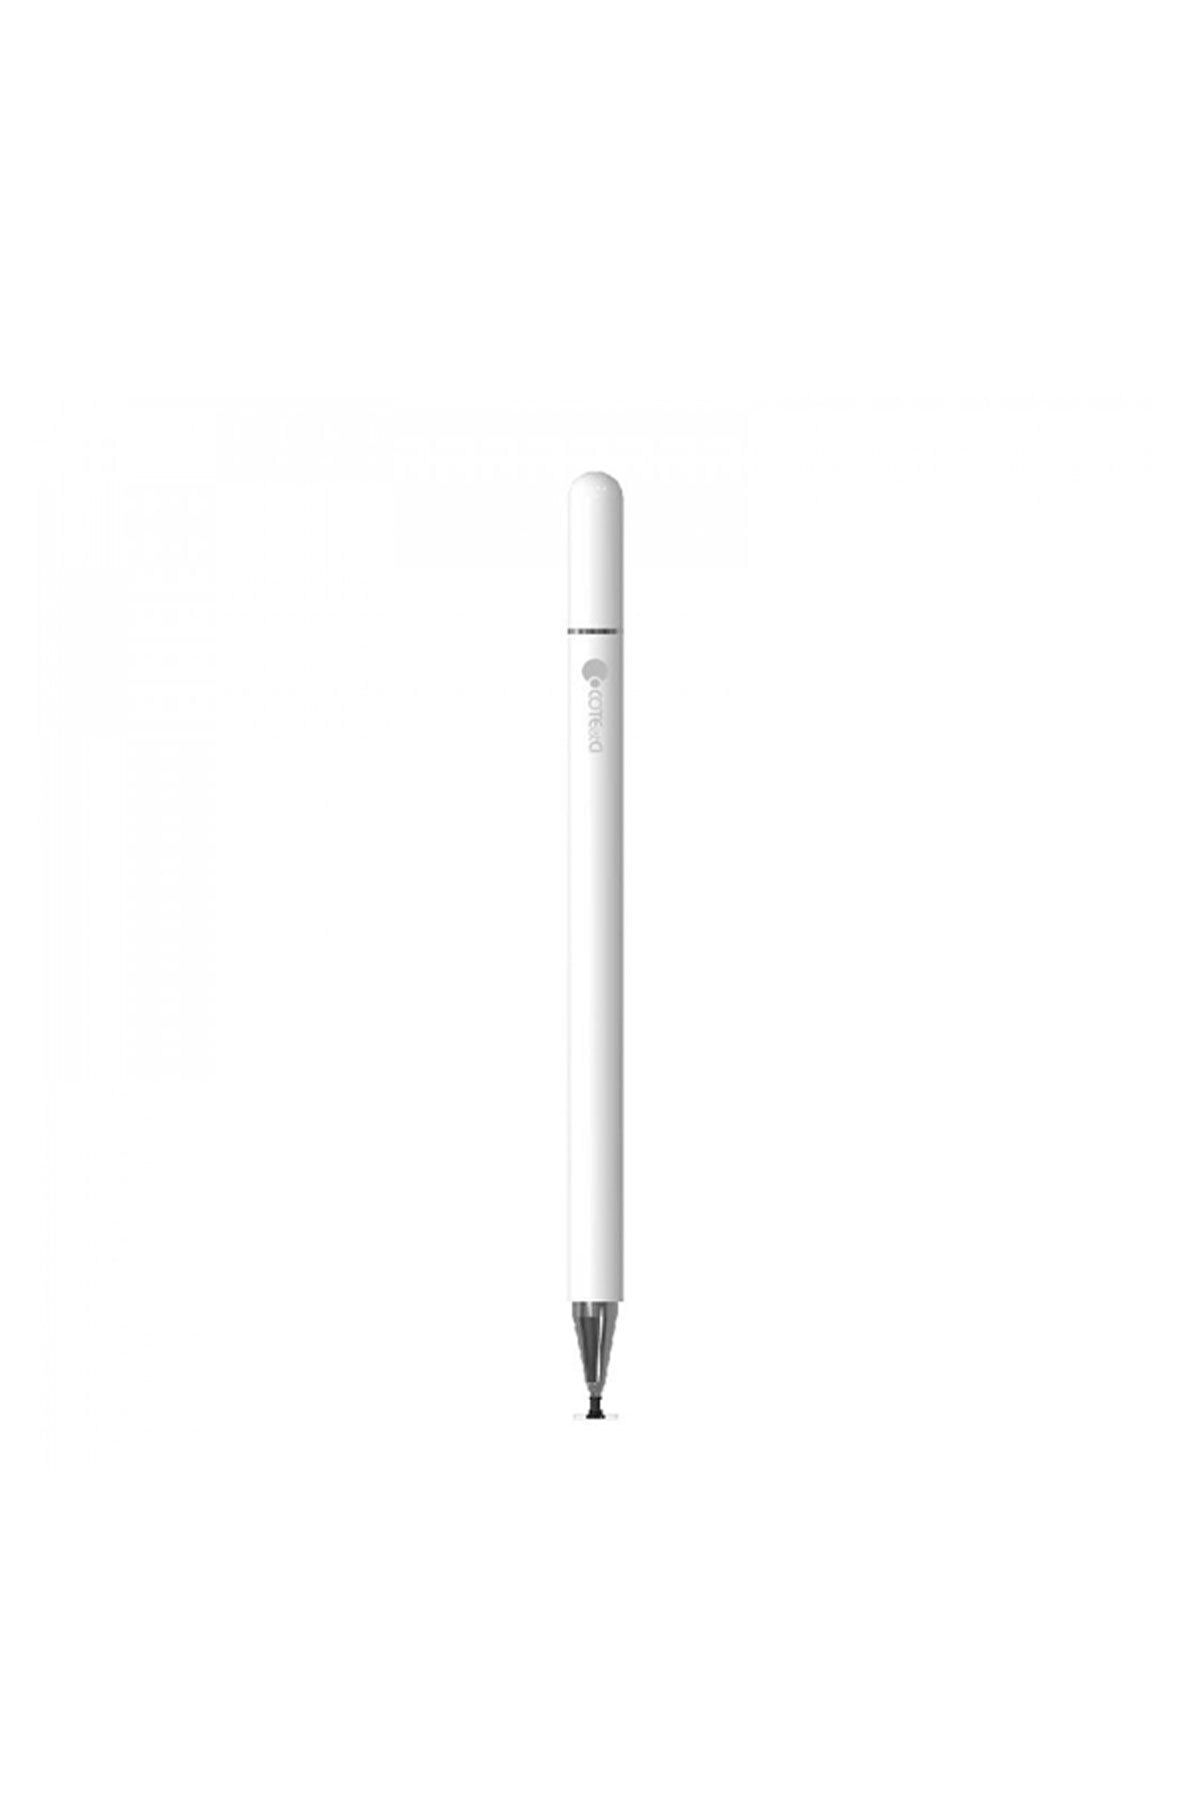 TahTicMer Dokunmatik Kalem Stylus Universal Mıknatıslı Tüm Tablet Ve Telefon Modellerine Uygun Beyaz